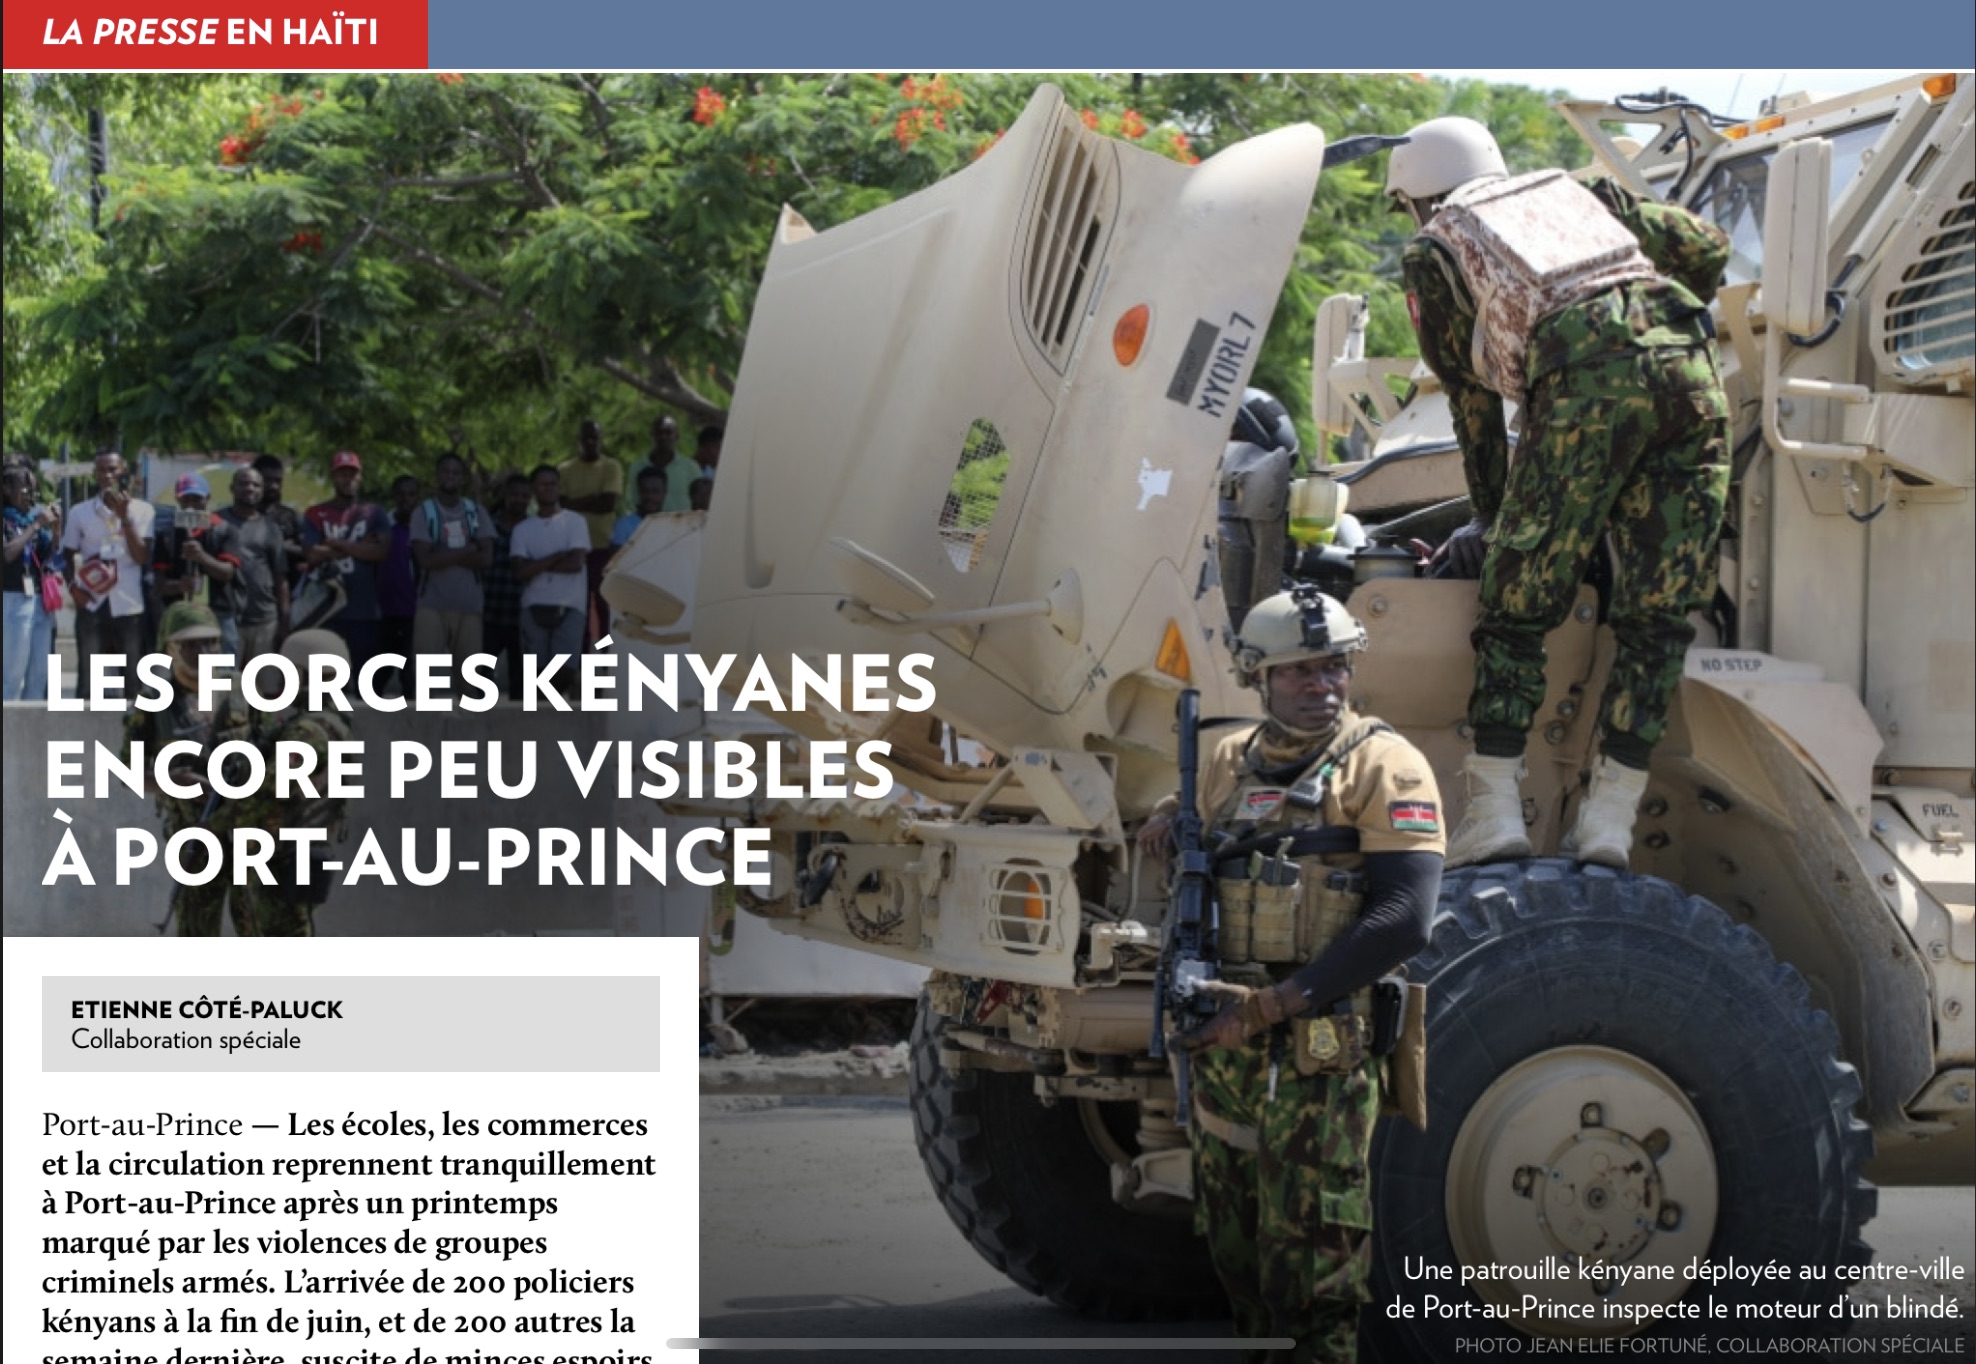 La Presse en Haïti | Les forces kényanes encore peu visibles à Port-au-Prince